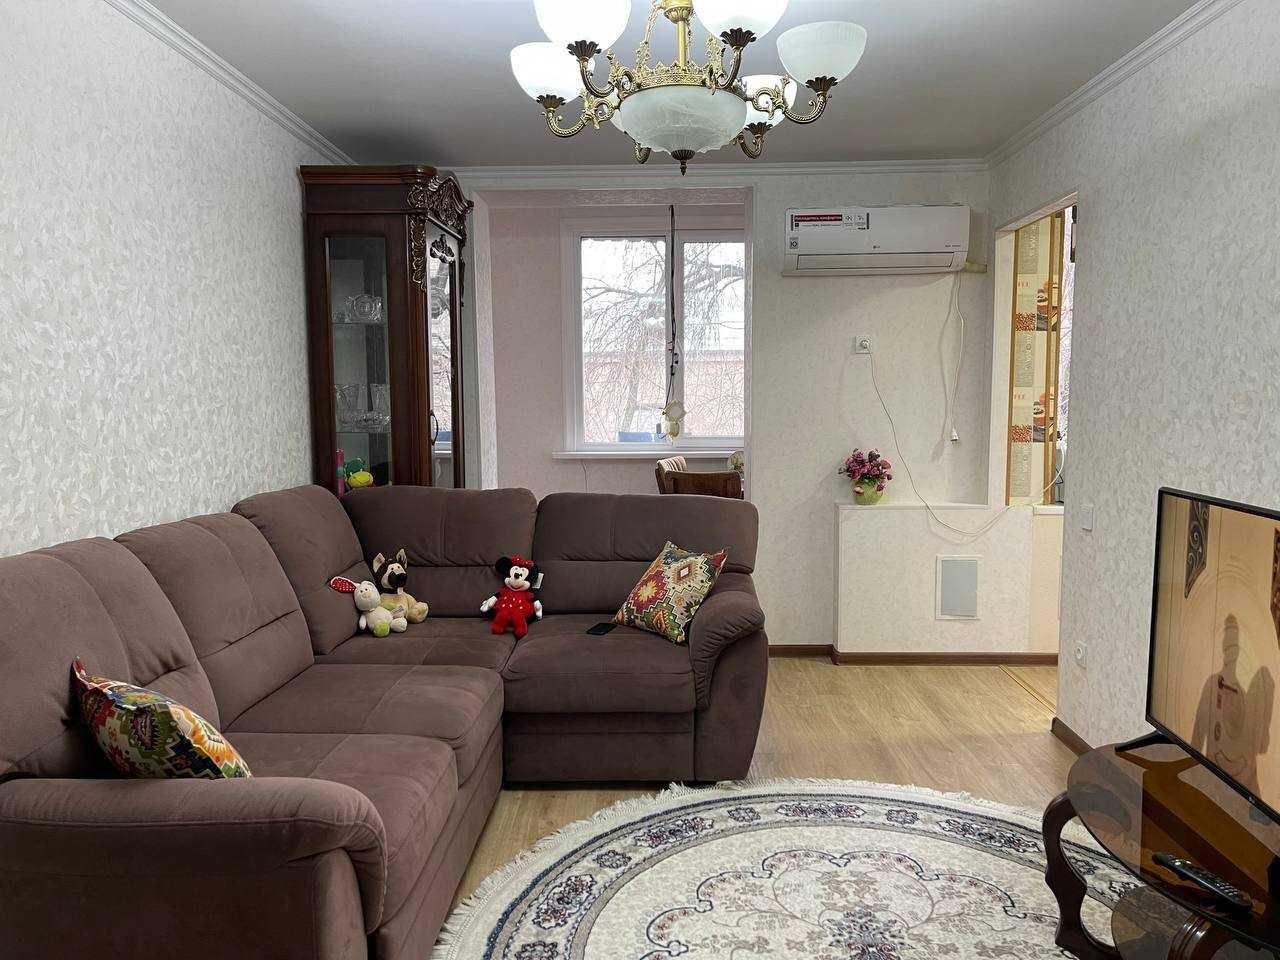 Продается квартира на Новомосковской с хорошим ремонтом без мебели!